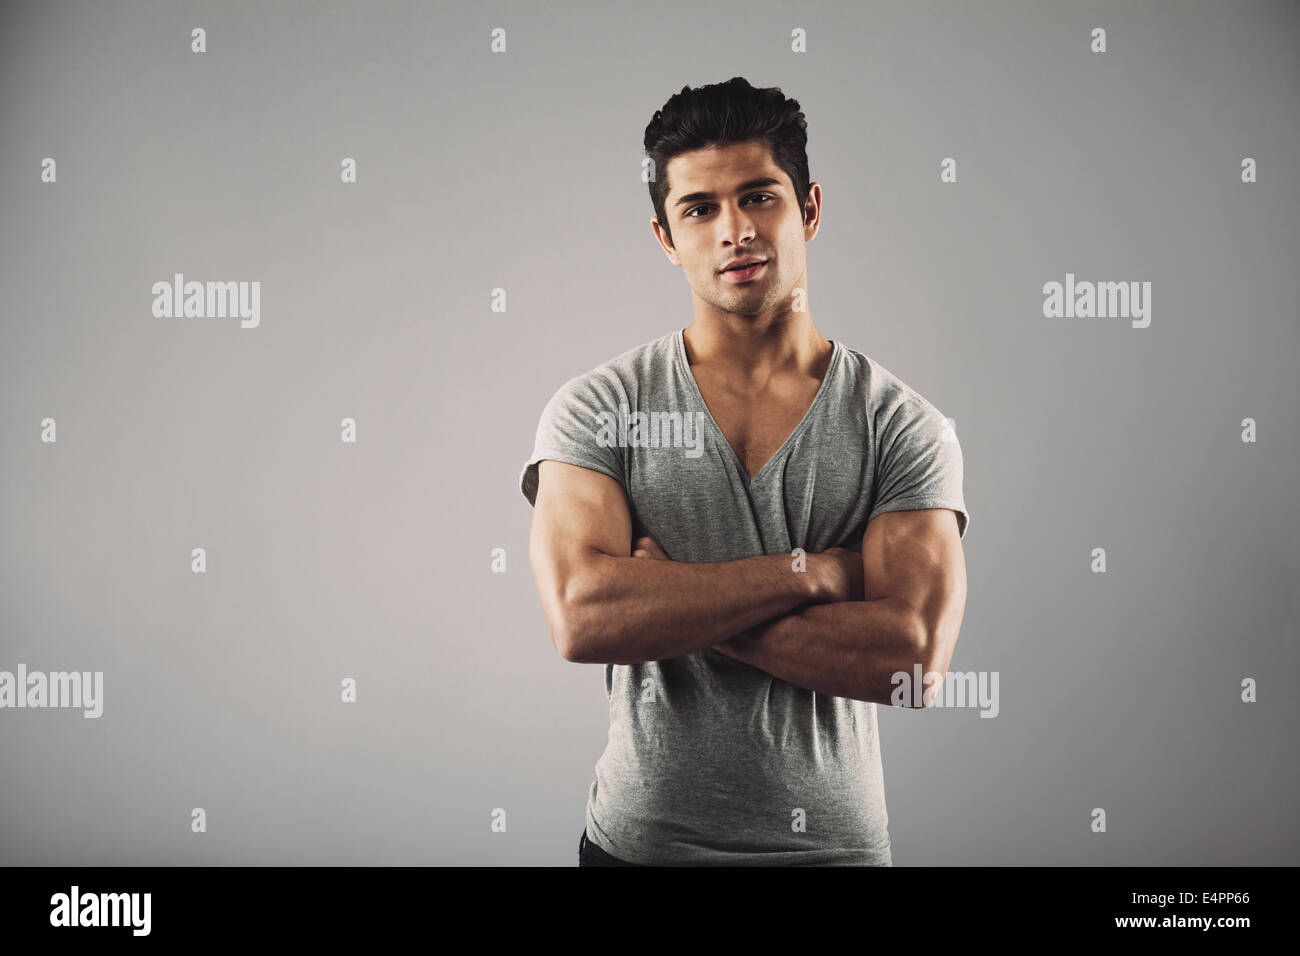 Retrato de joven hombre muscular posando contra un fondo gris. Los jóvenes hispanos guapo modelo masculino de pie con sus brazos cruzados. Foto de stock